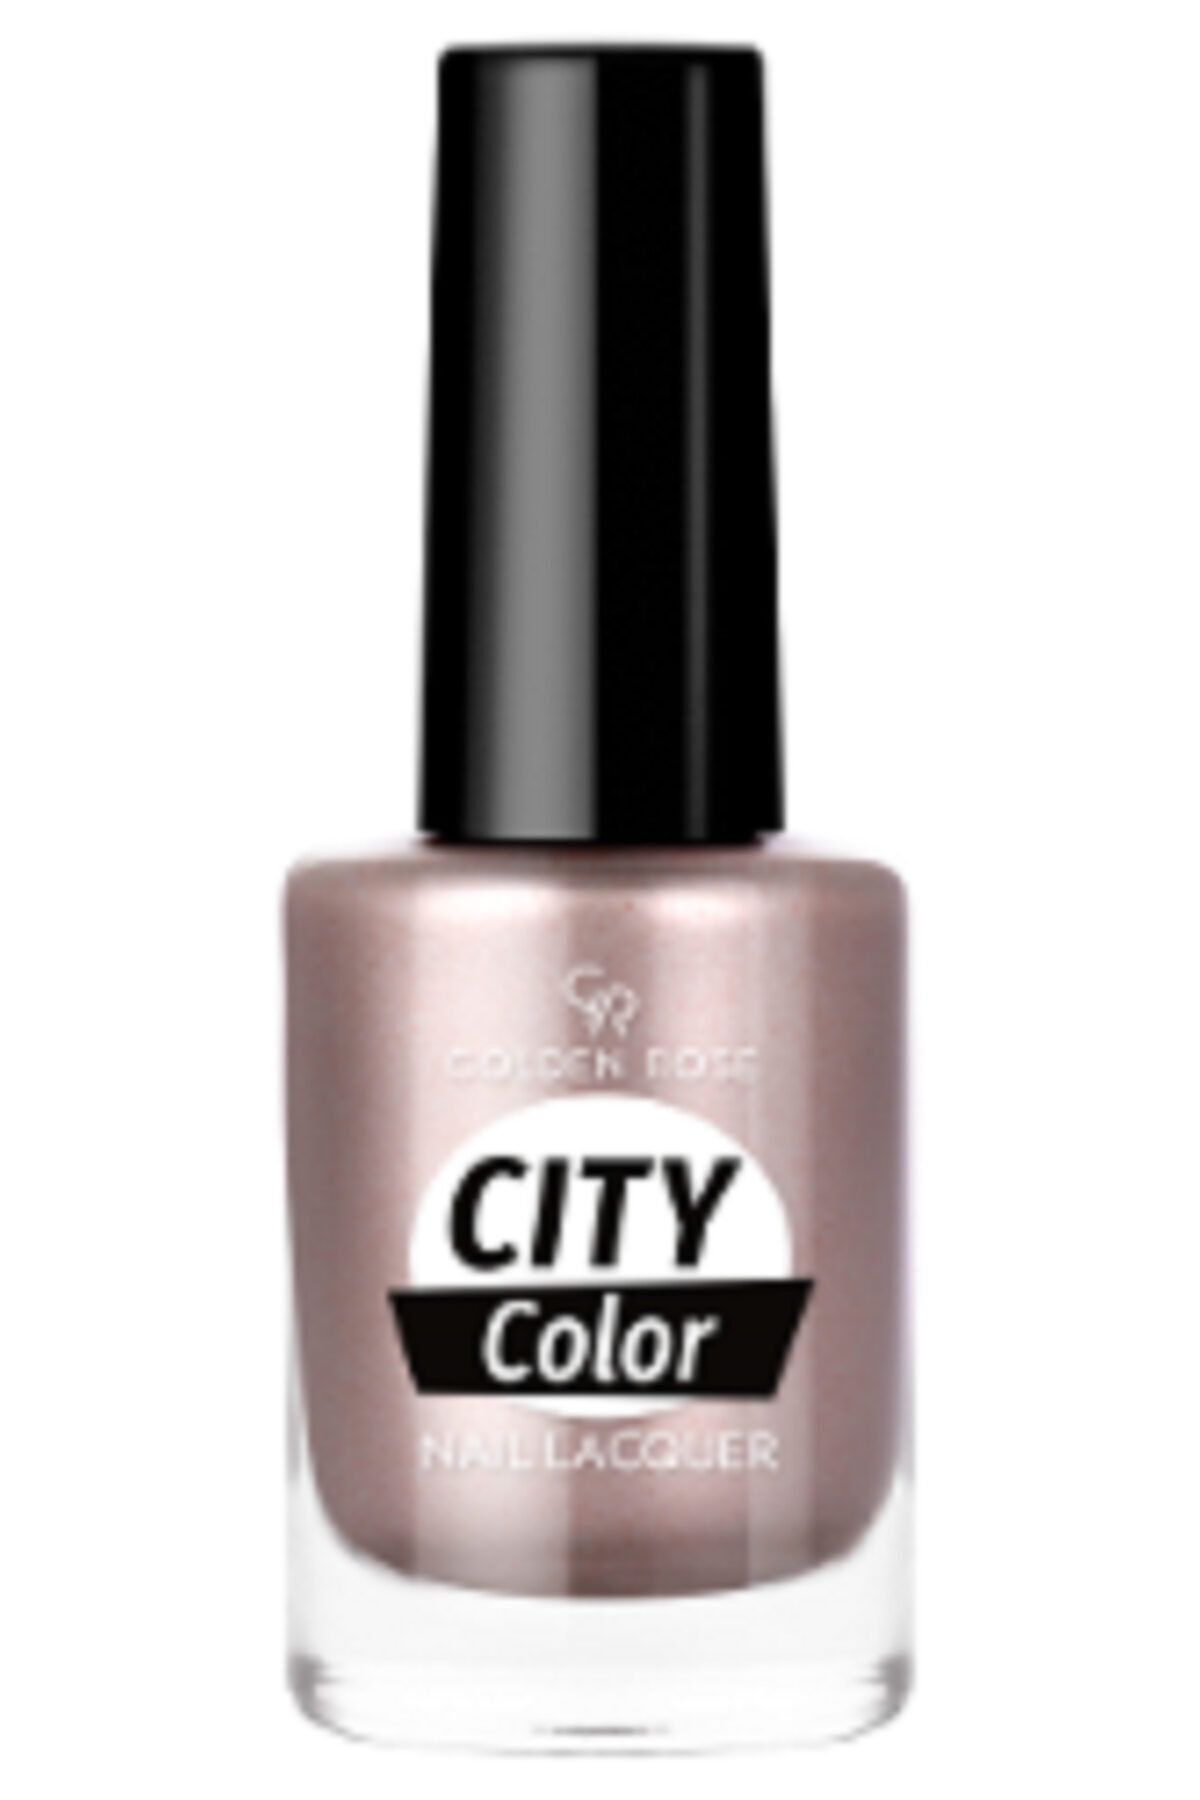 لاک ناخن سیتی کالر City color رنگ صورتی بژ شماره ۷۲ گلدن رز Golden Rose